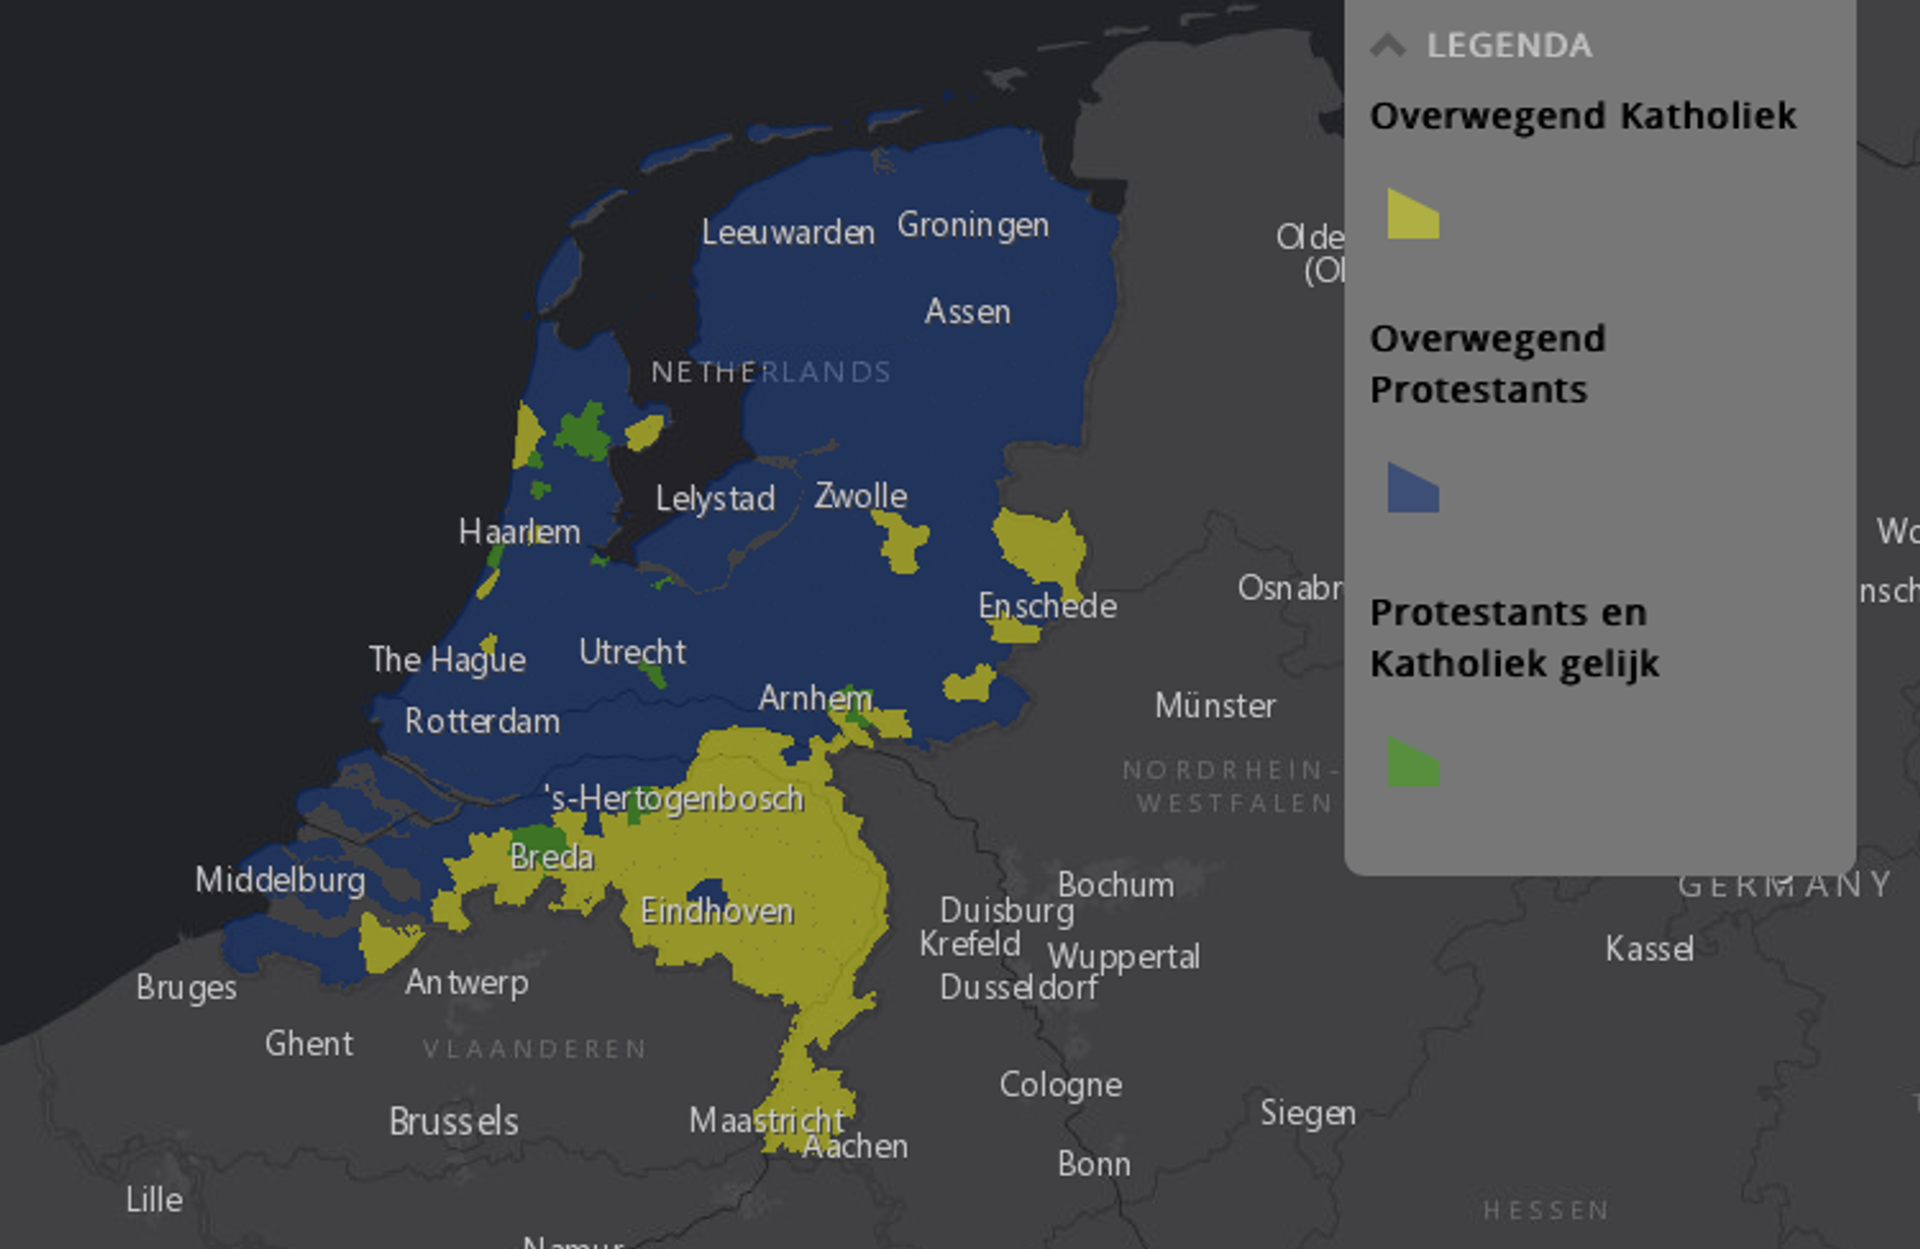 Overwegend katholieke en protestante gebieden Nederland.